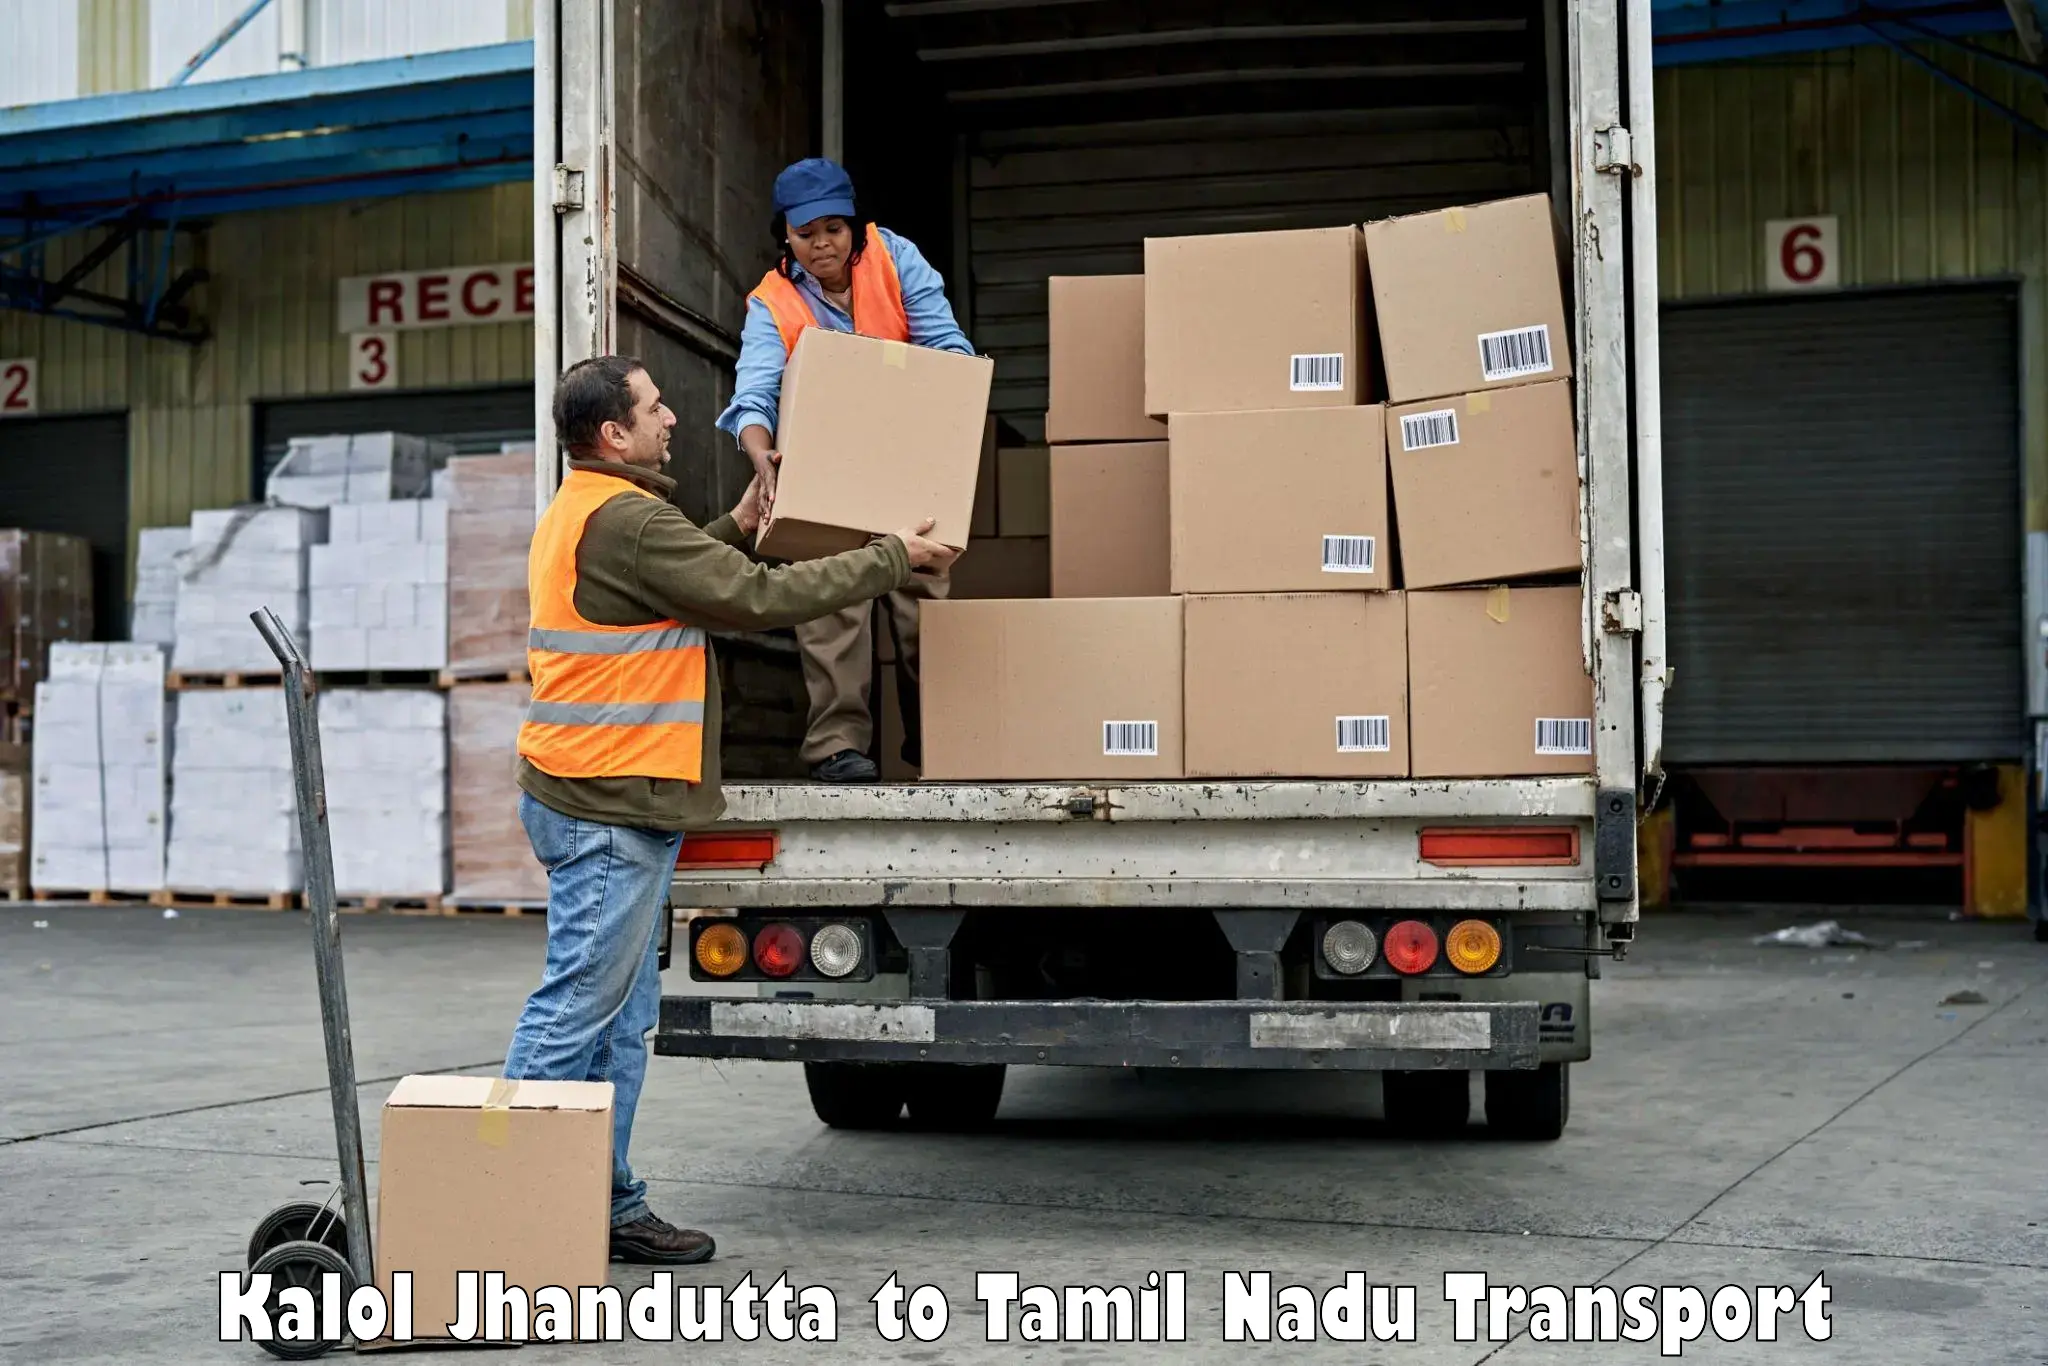 Truck transport companies in India Kalol Jhandutta to Vallioor